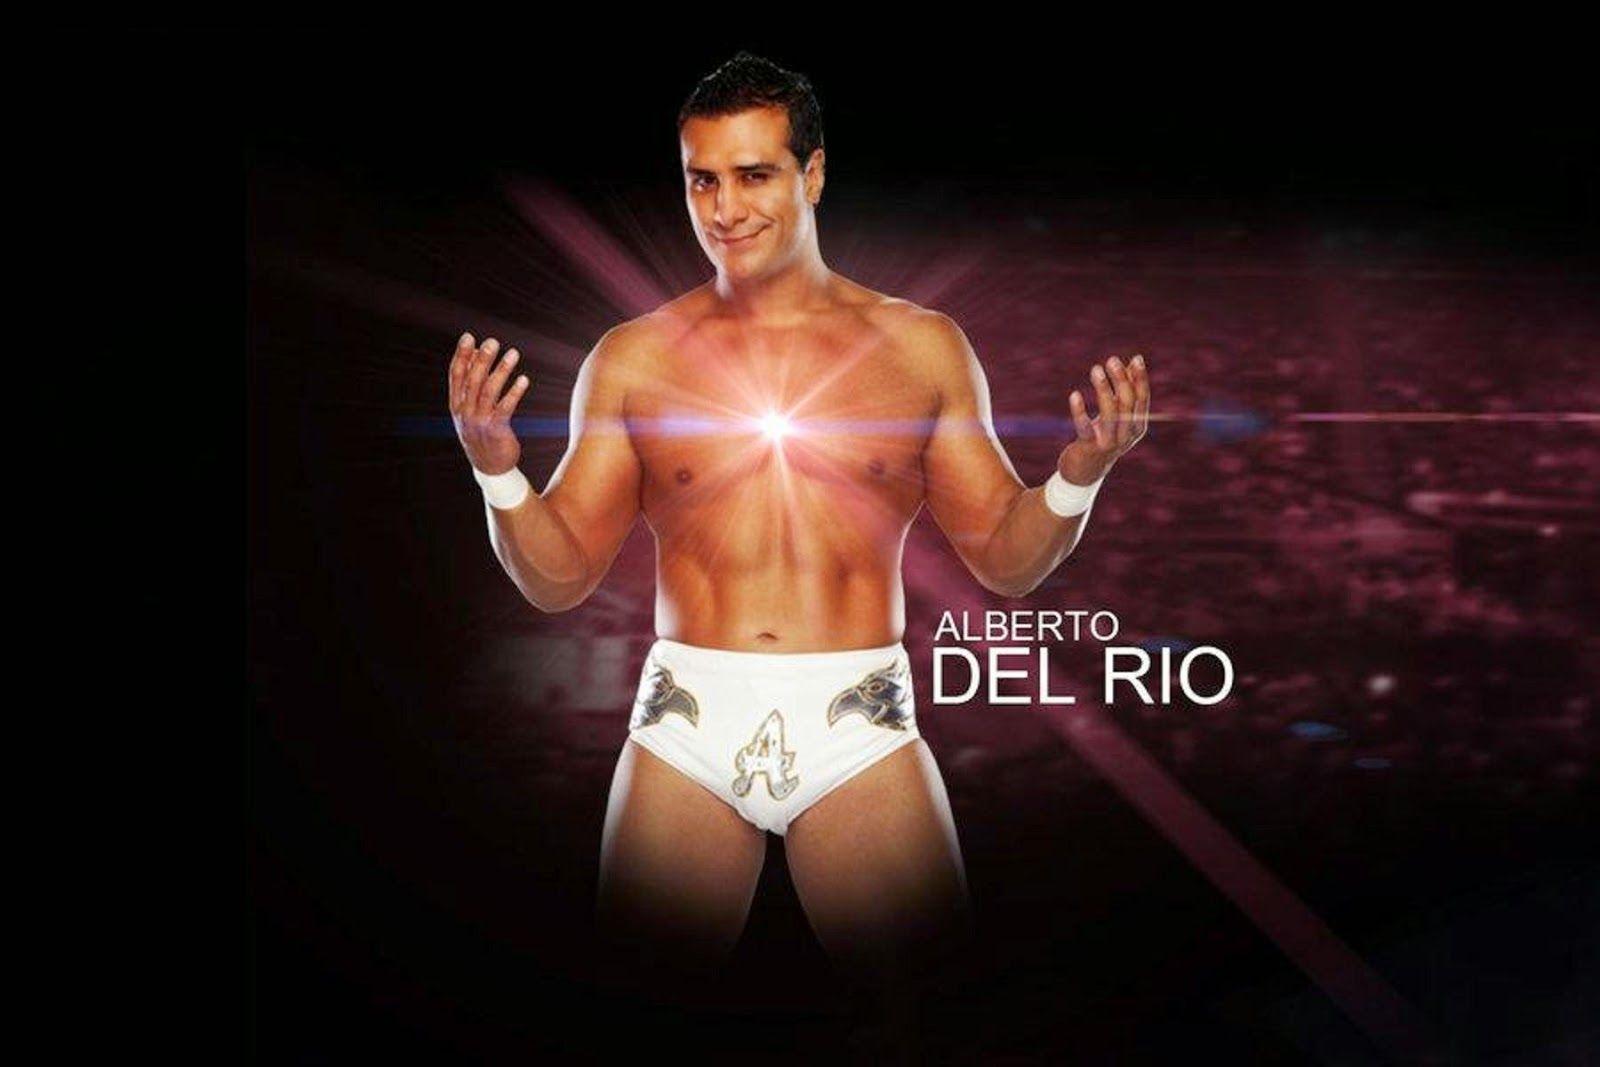 Alberto Del Rio HD Wallpaper. WWE HD WALLPAPER FREE DOWNLOAD